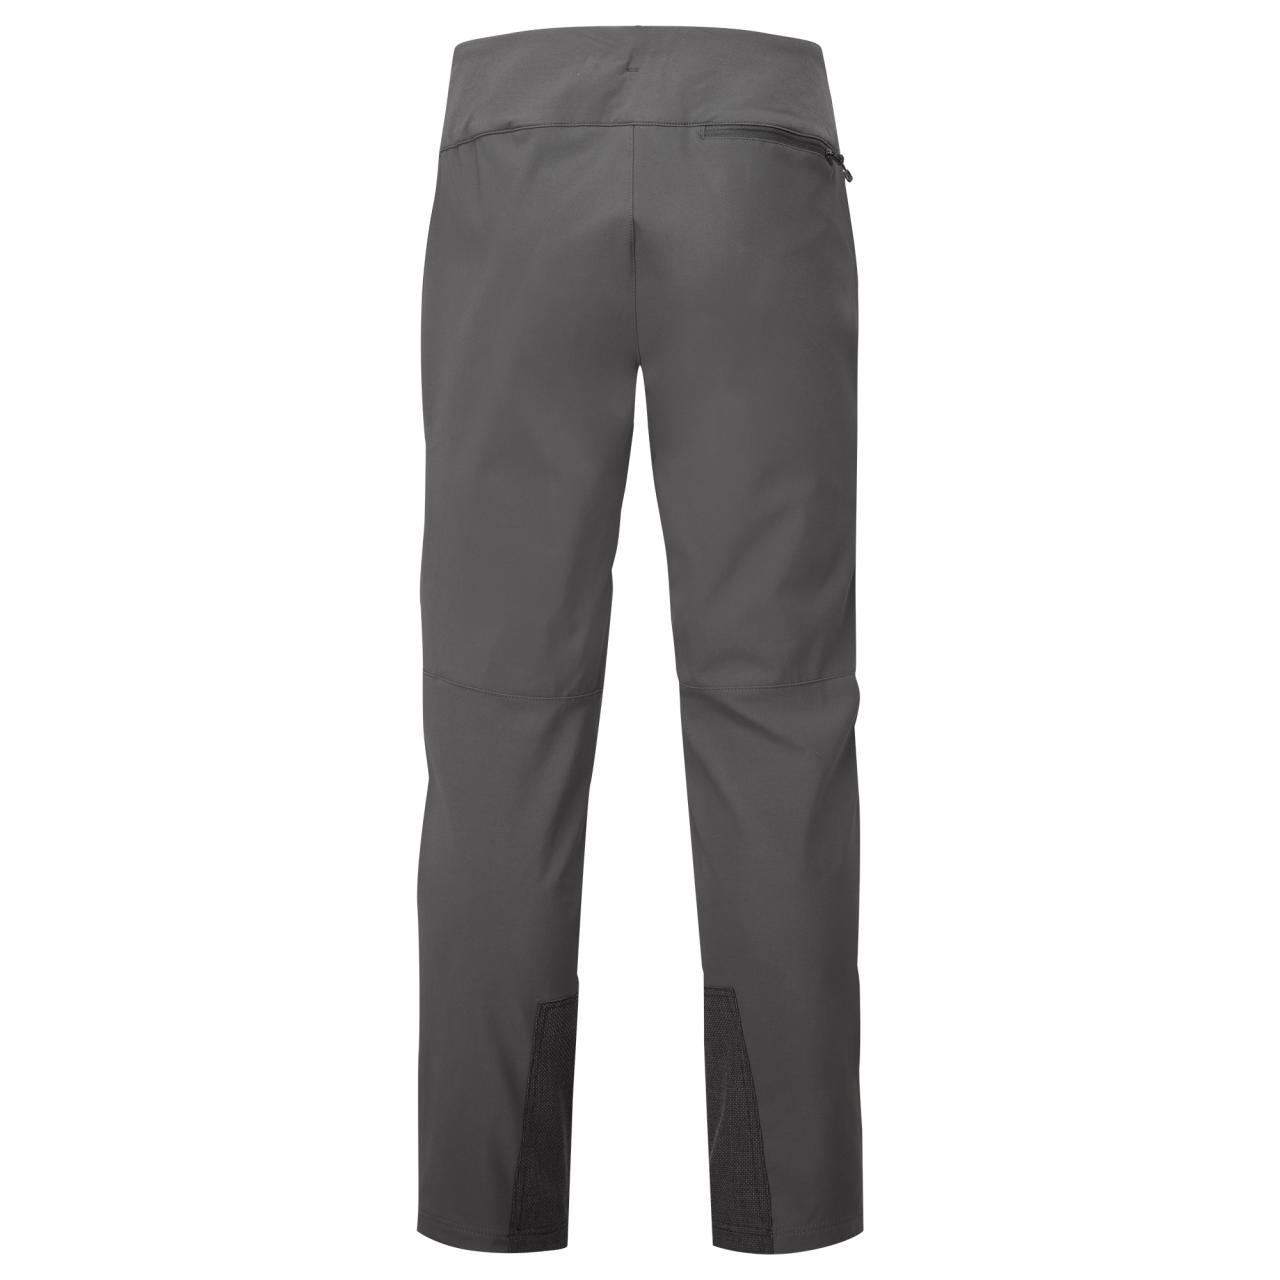 TENACITY XT PANTS SHORT LEG-MIDNIGHT GREY-28/XS pánské kalhoty tmavě šedé